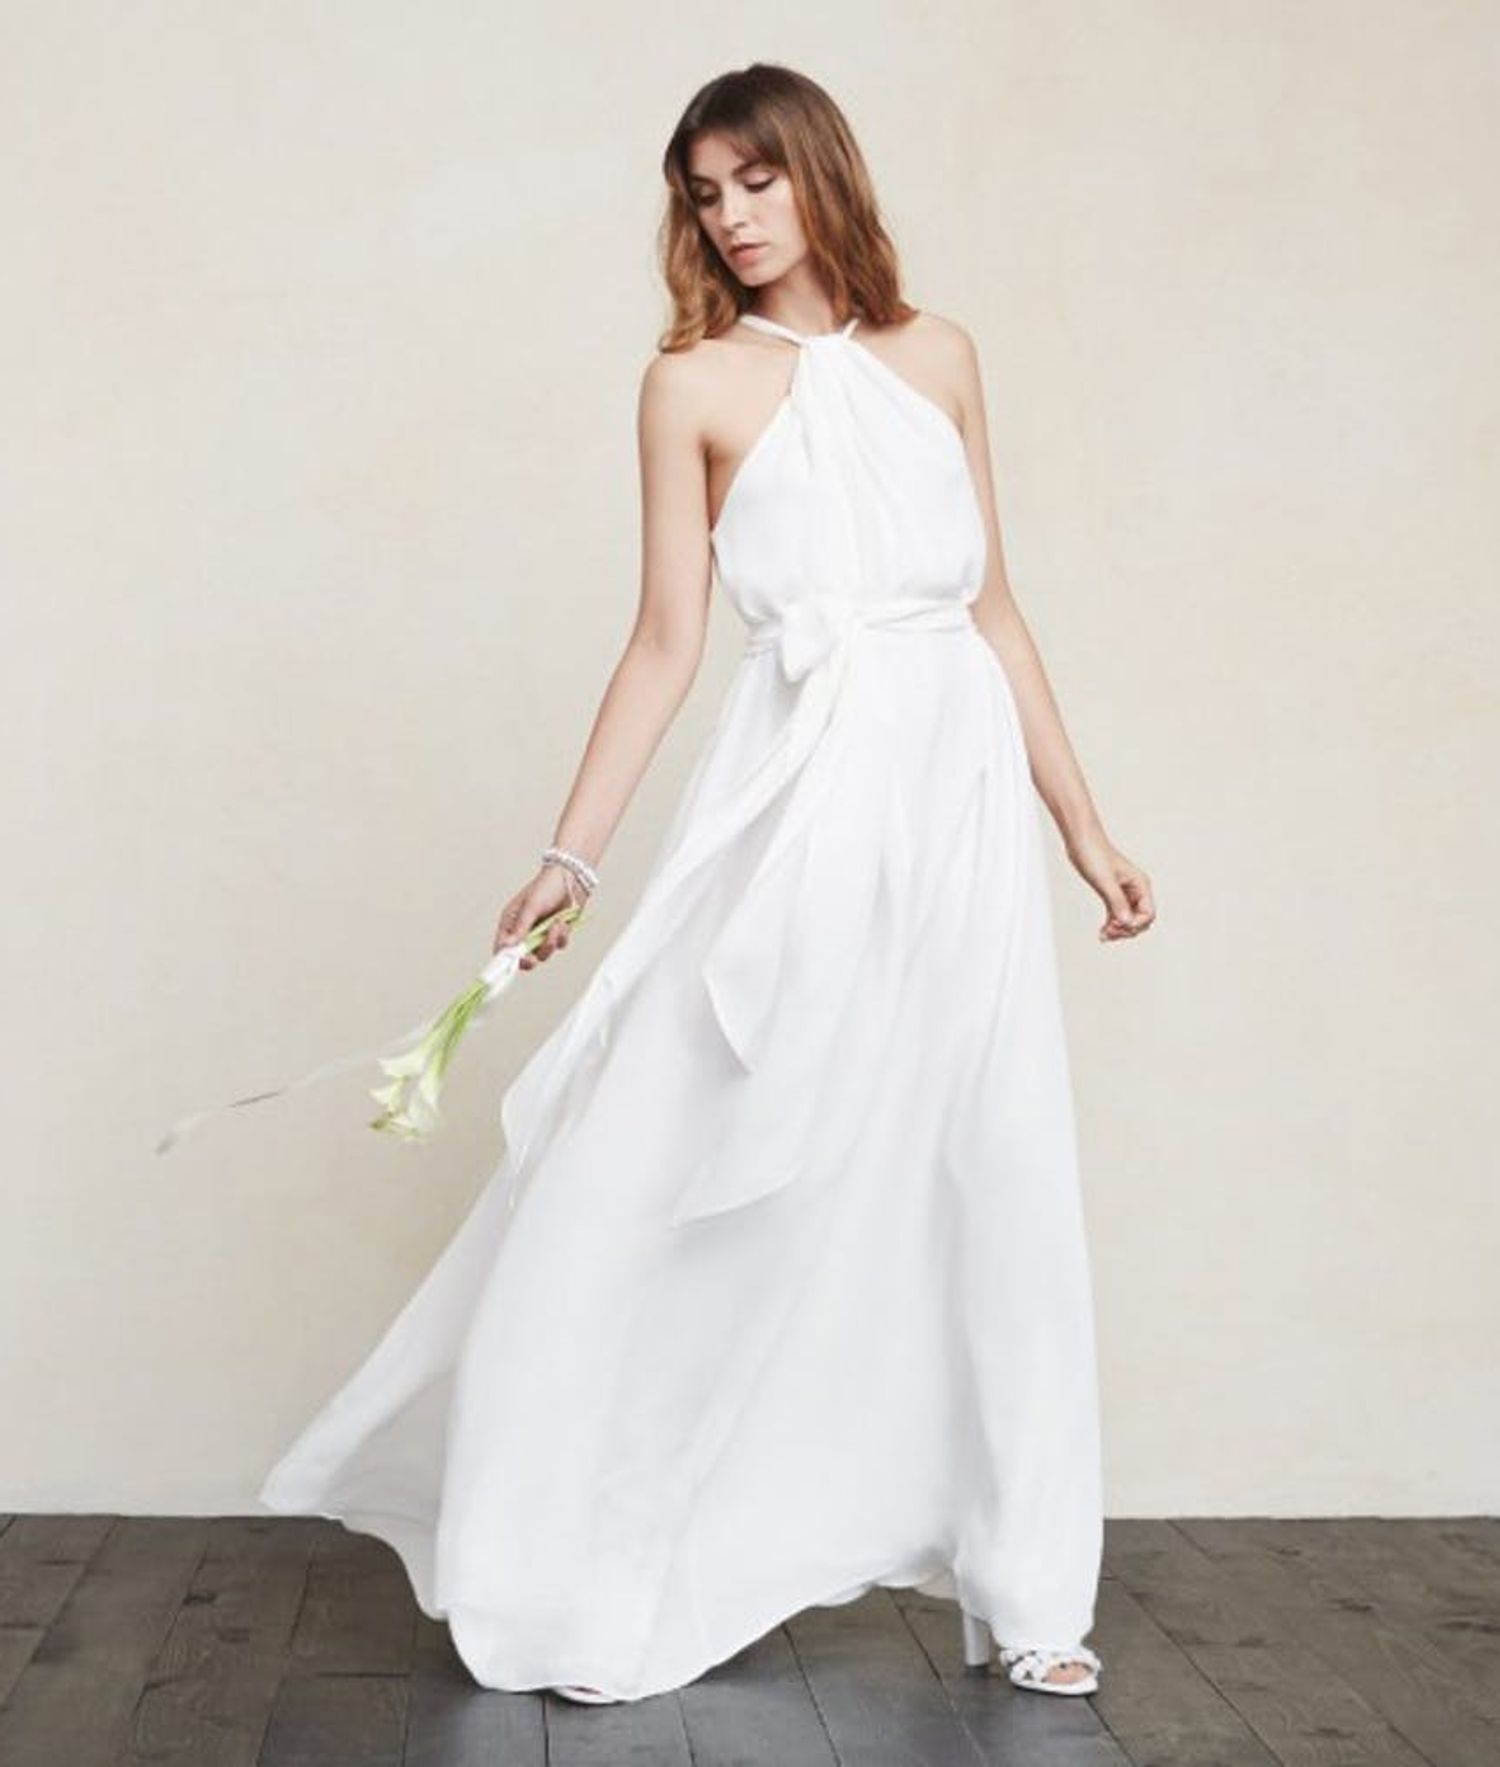 14 Stunning Wedding Dresses Under $500 - Brit + Co